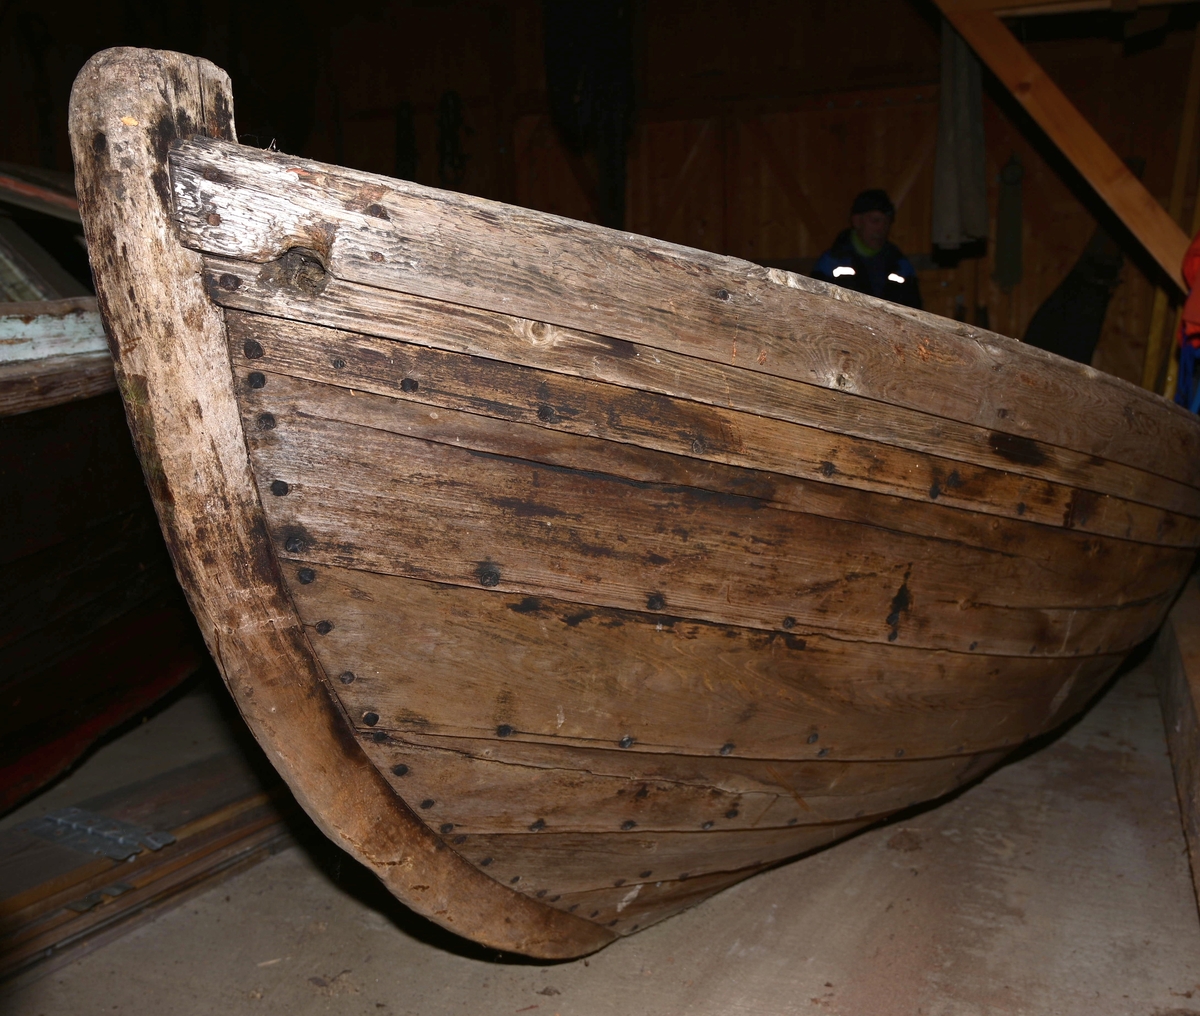 Båten er en dorry som er klinkbygd med 7 bordganger. Den har to årepar, og kjettinger til å løfte den opp. Båten er platt i hekken.